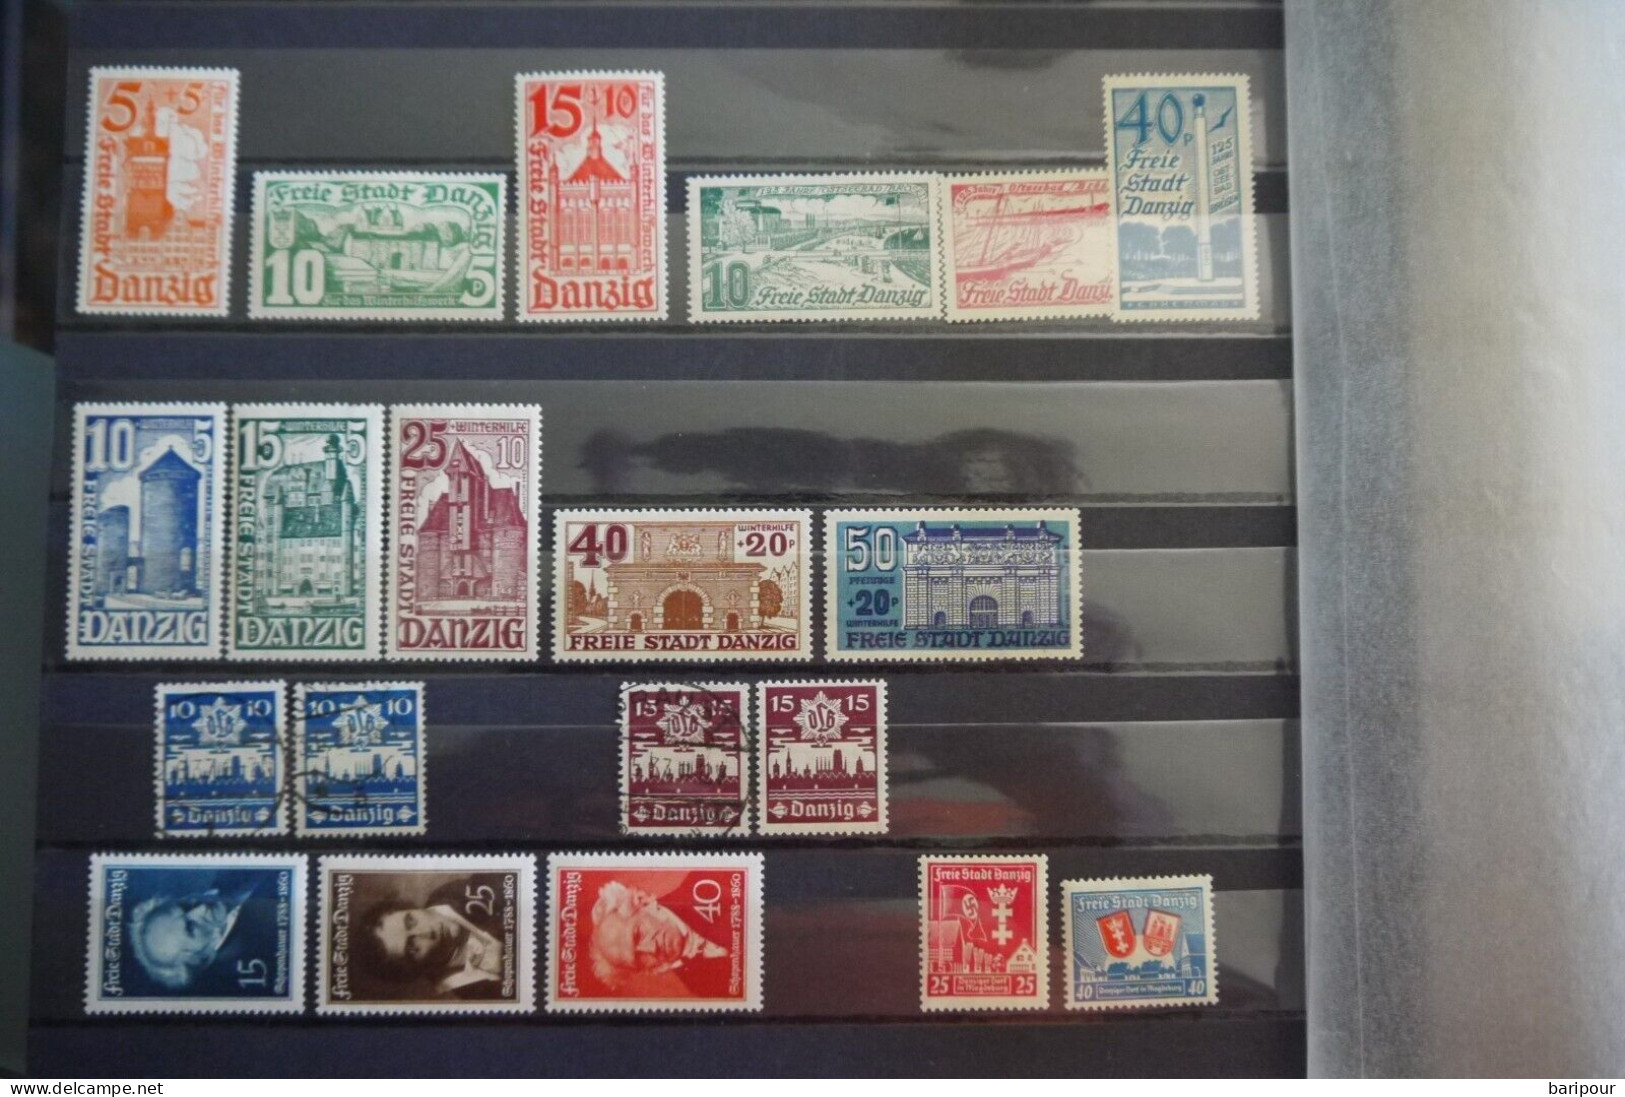 Danzig umfangreiche Sammlung / Dubletten + Dienstmarken dabei 2 Blöcke